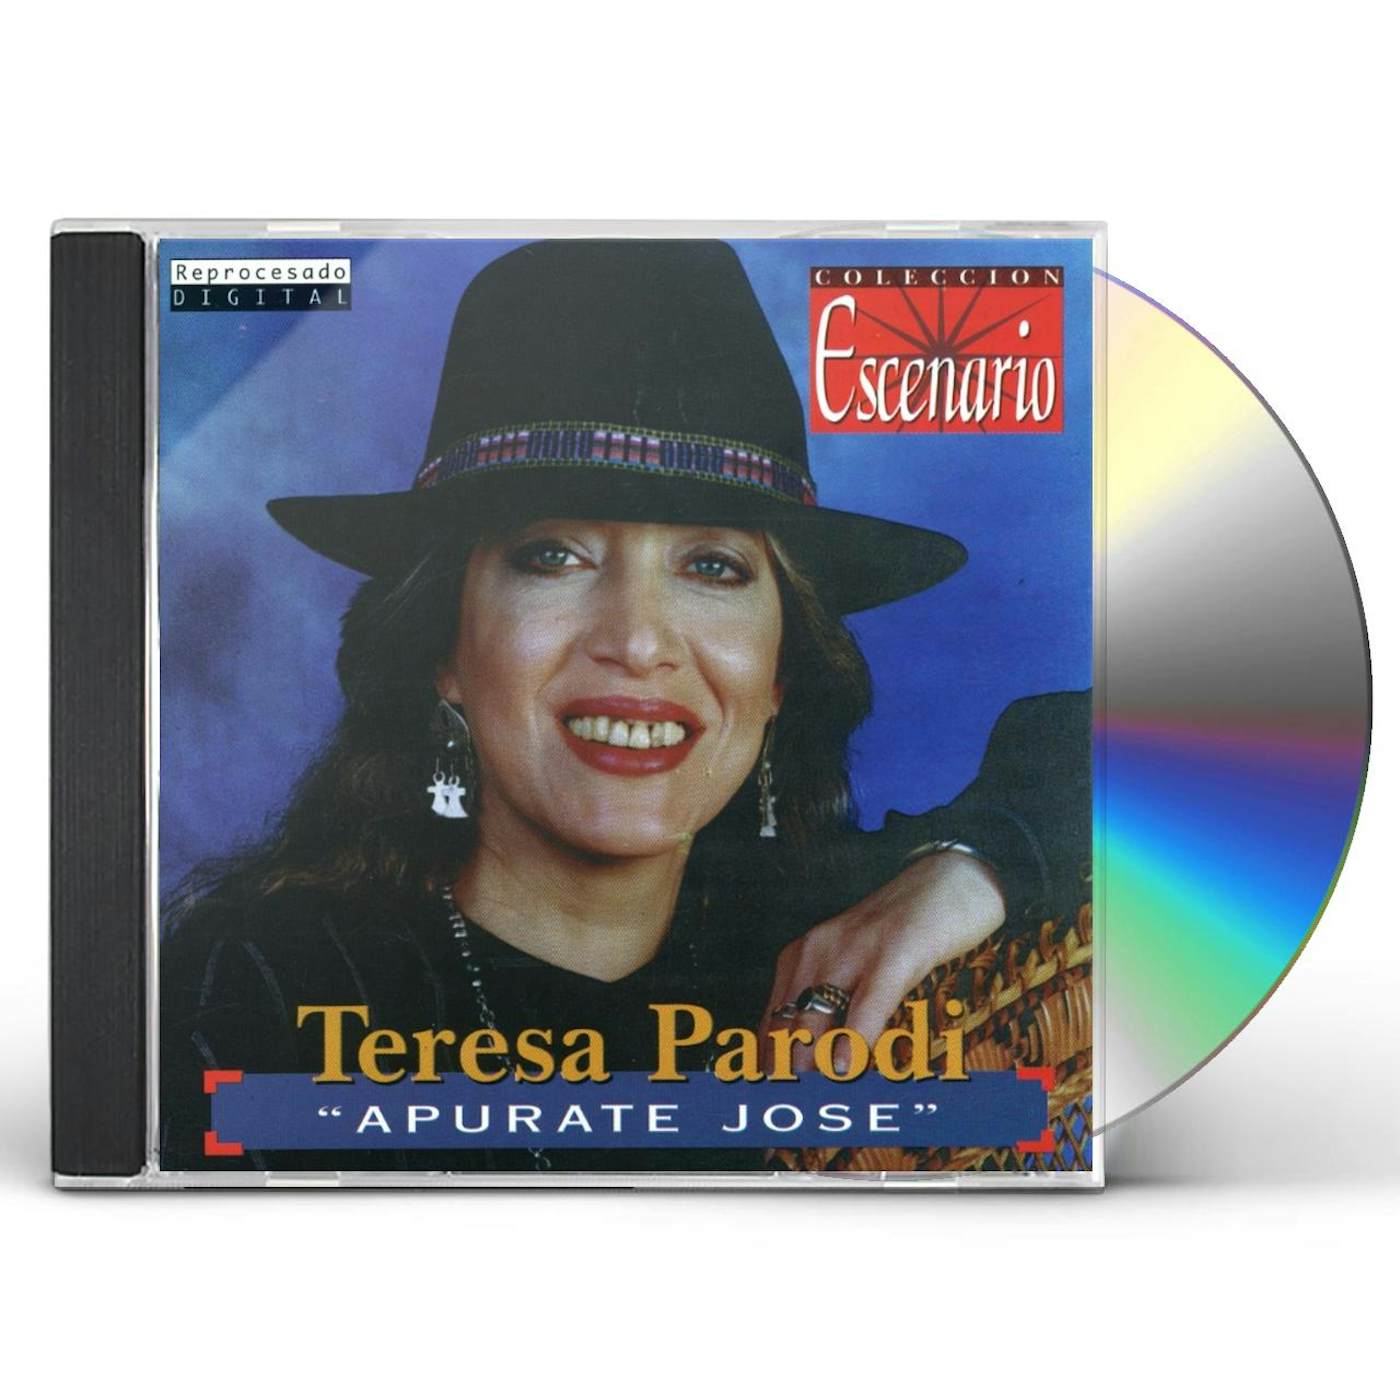 Teresa Parodi APURATE JOSE CD